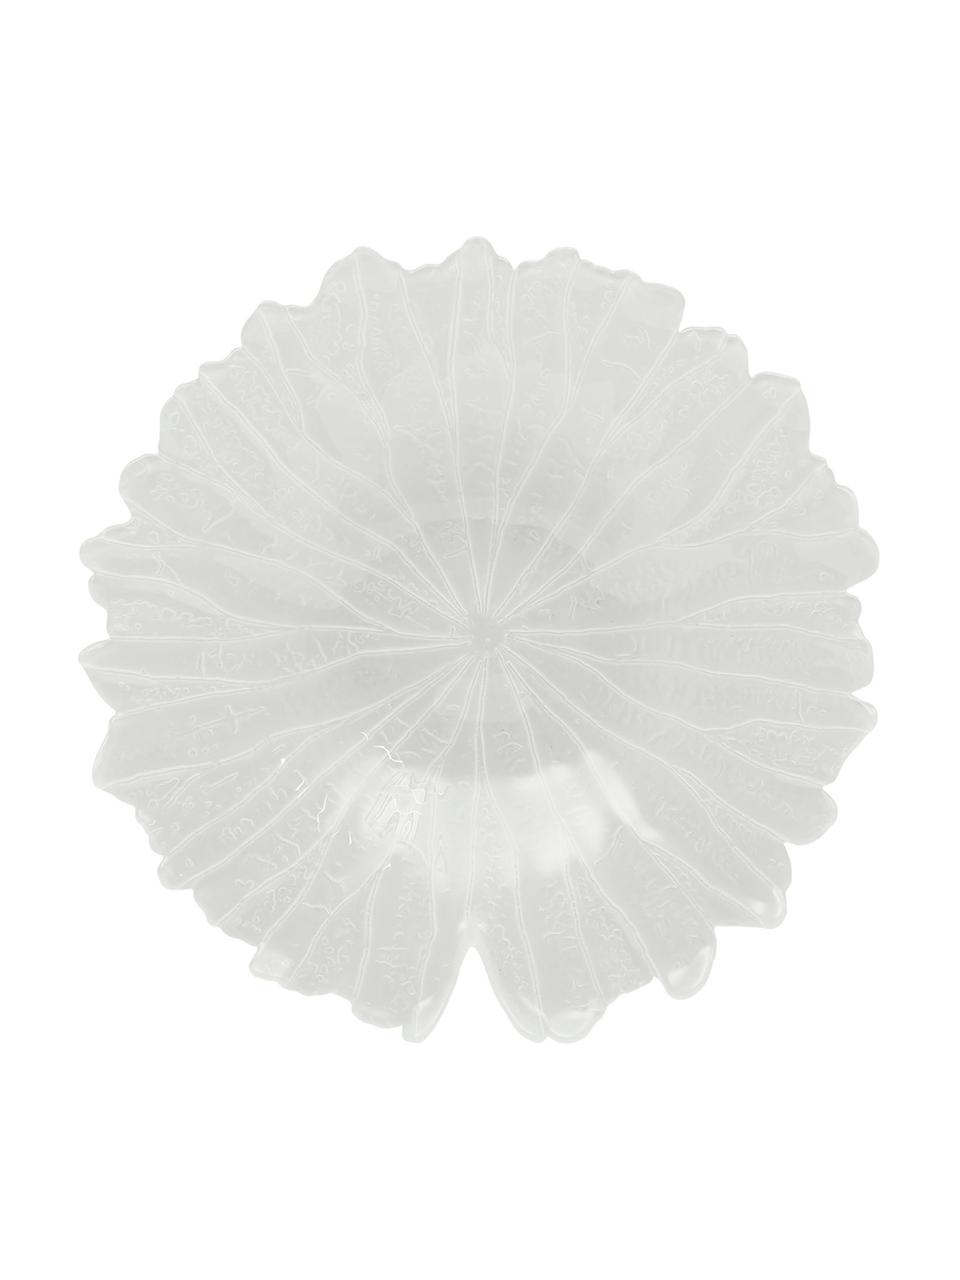 Misa do serwowania ze szkła Botanic, 4 szt., Szkło, Biały, Ø 33 x W 6 cm